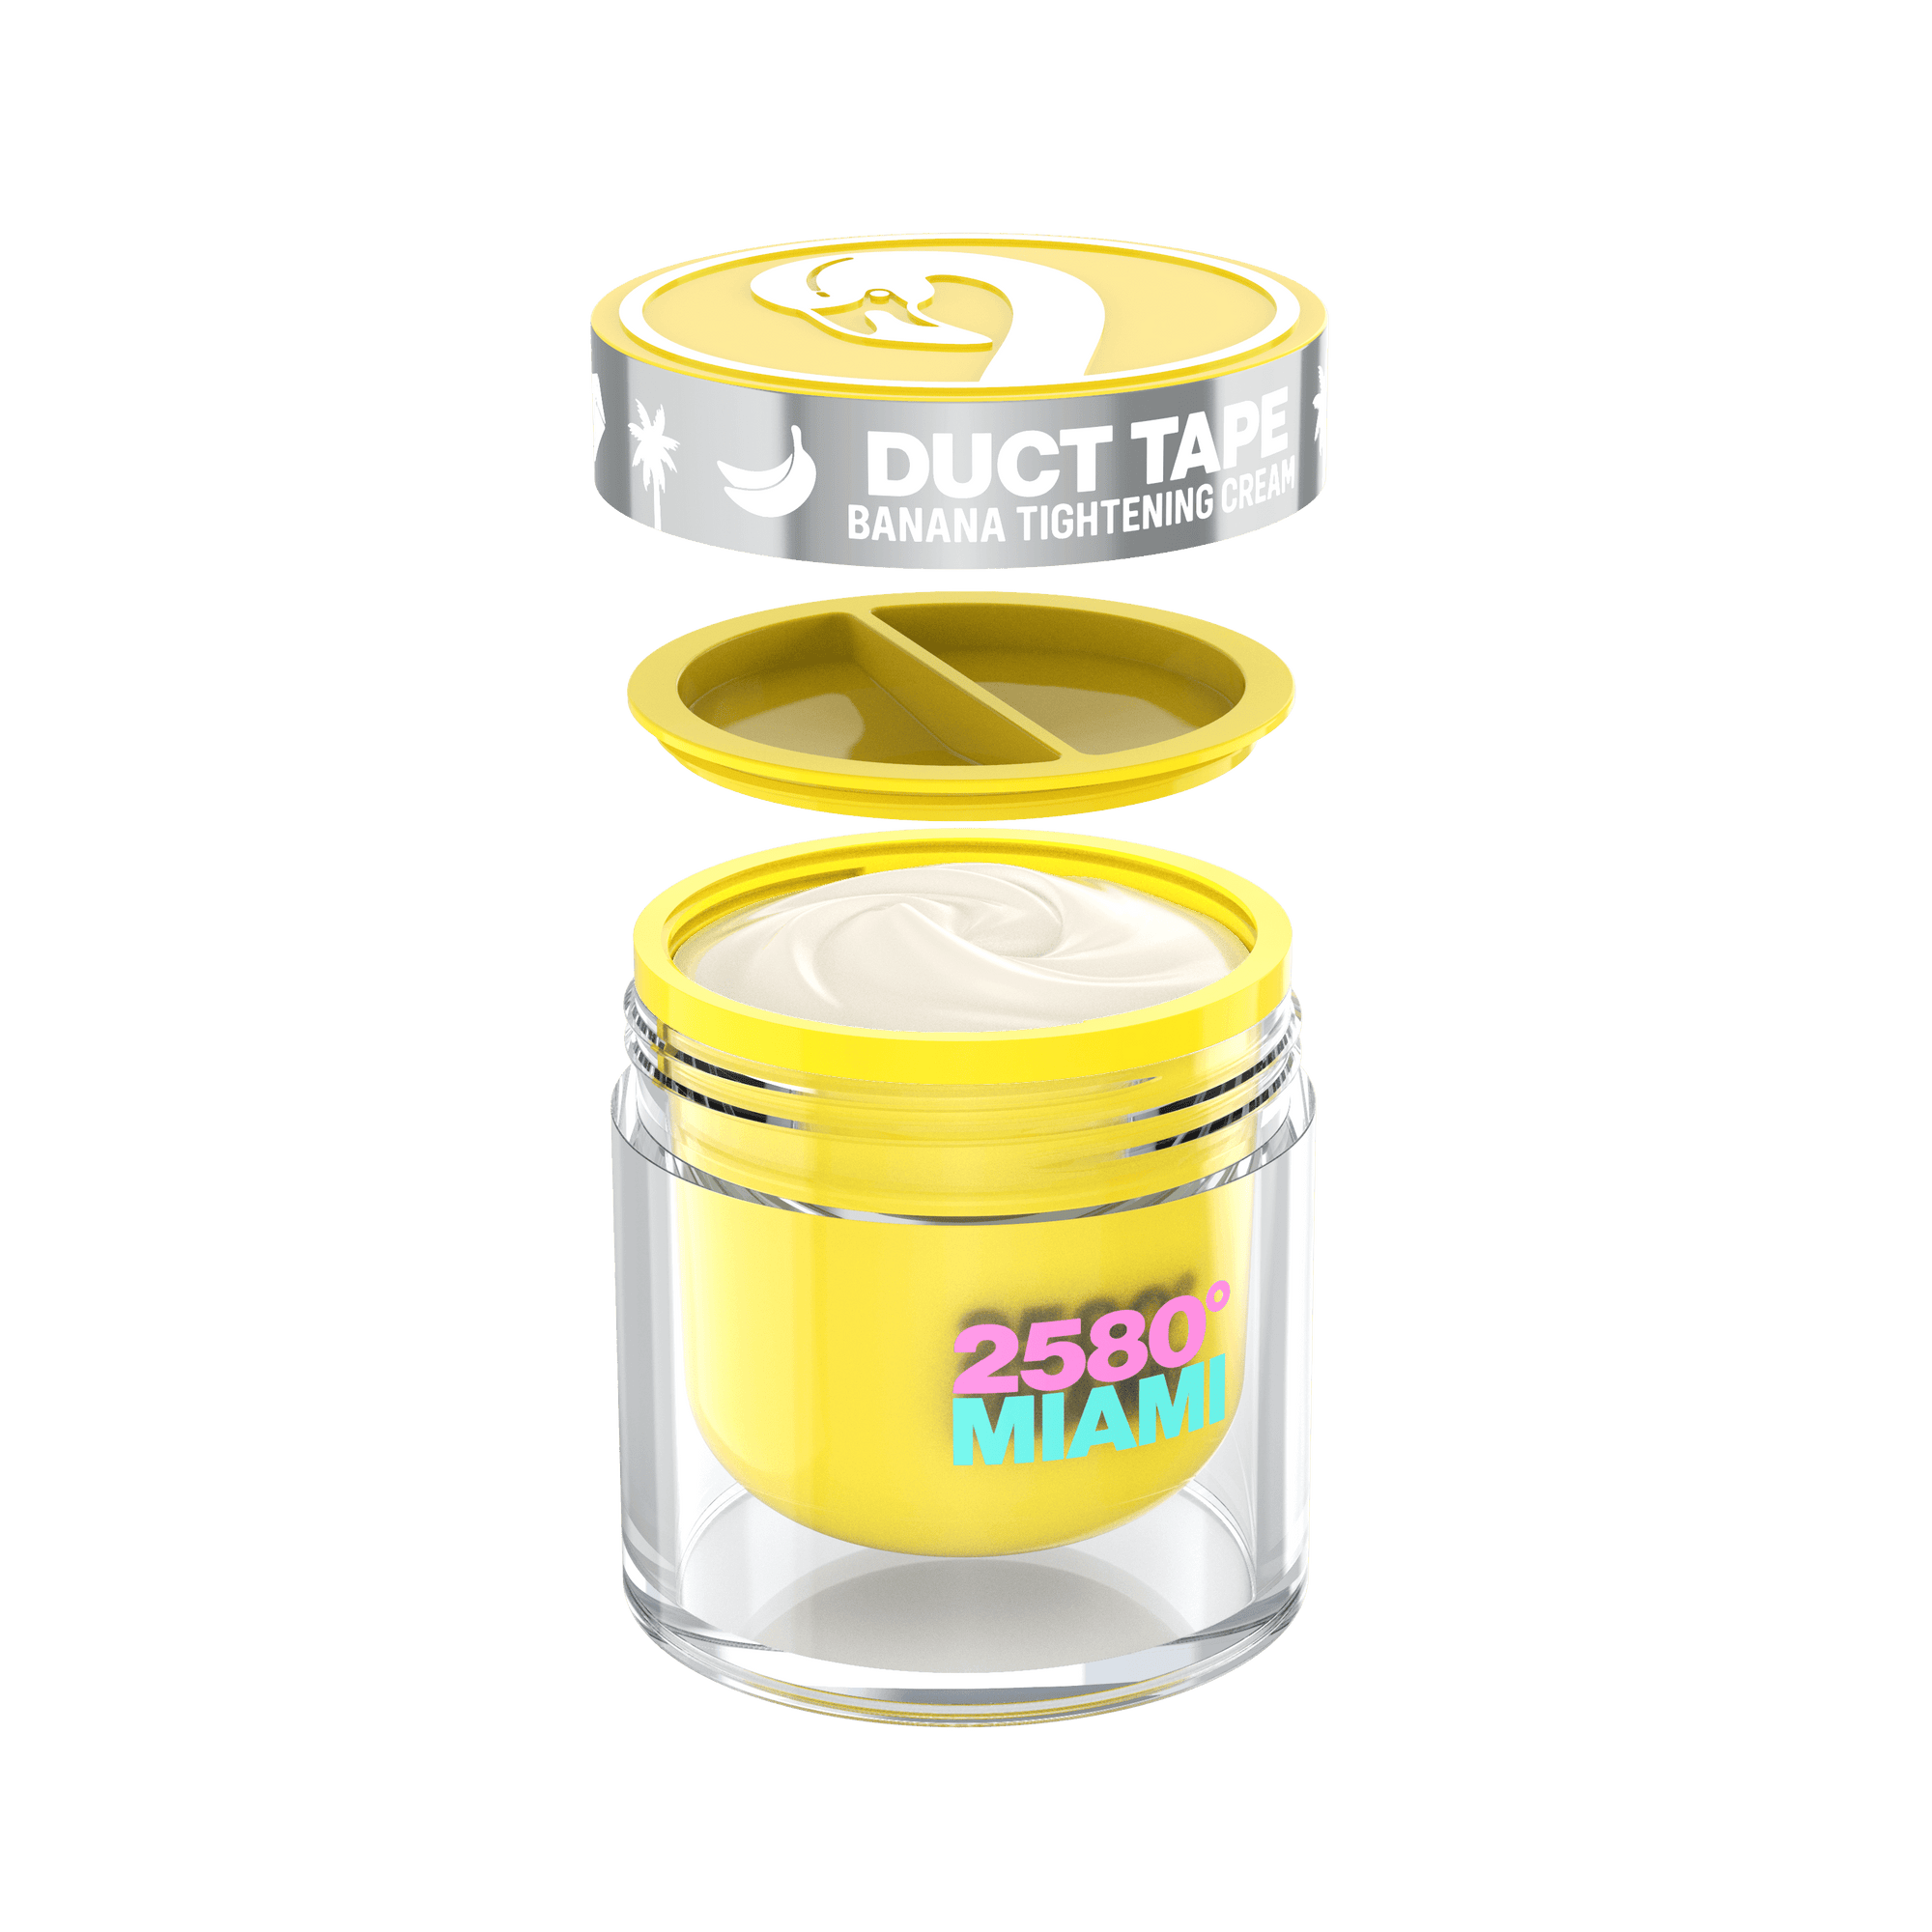 Duct Tape - Banana Tightening Cream - 220ml